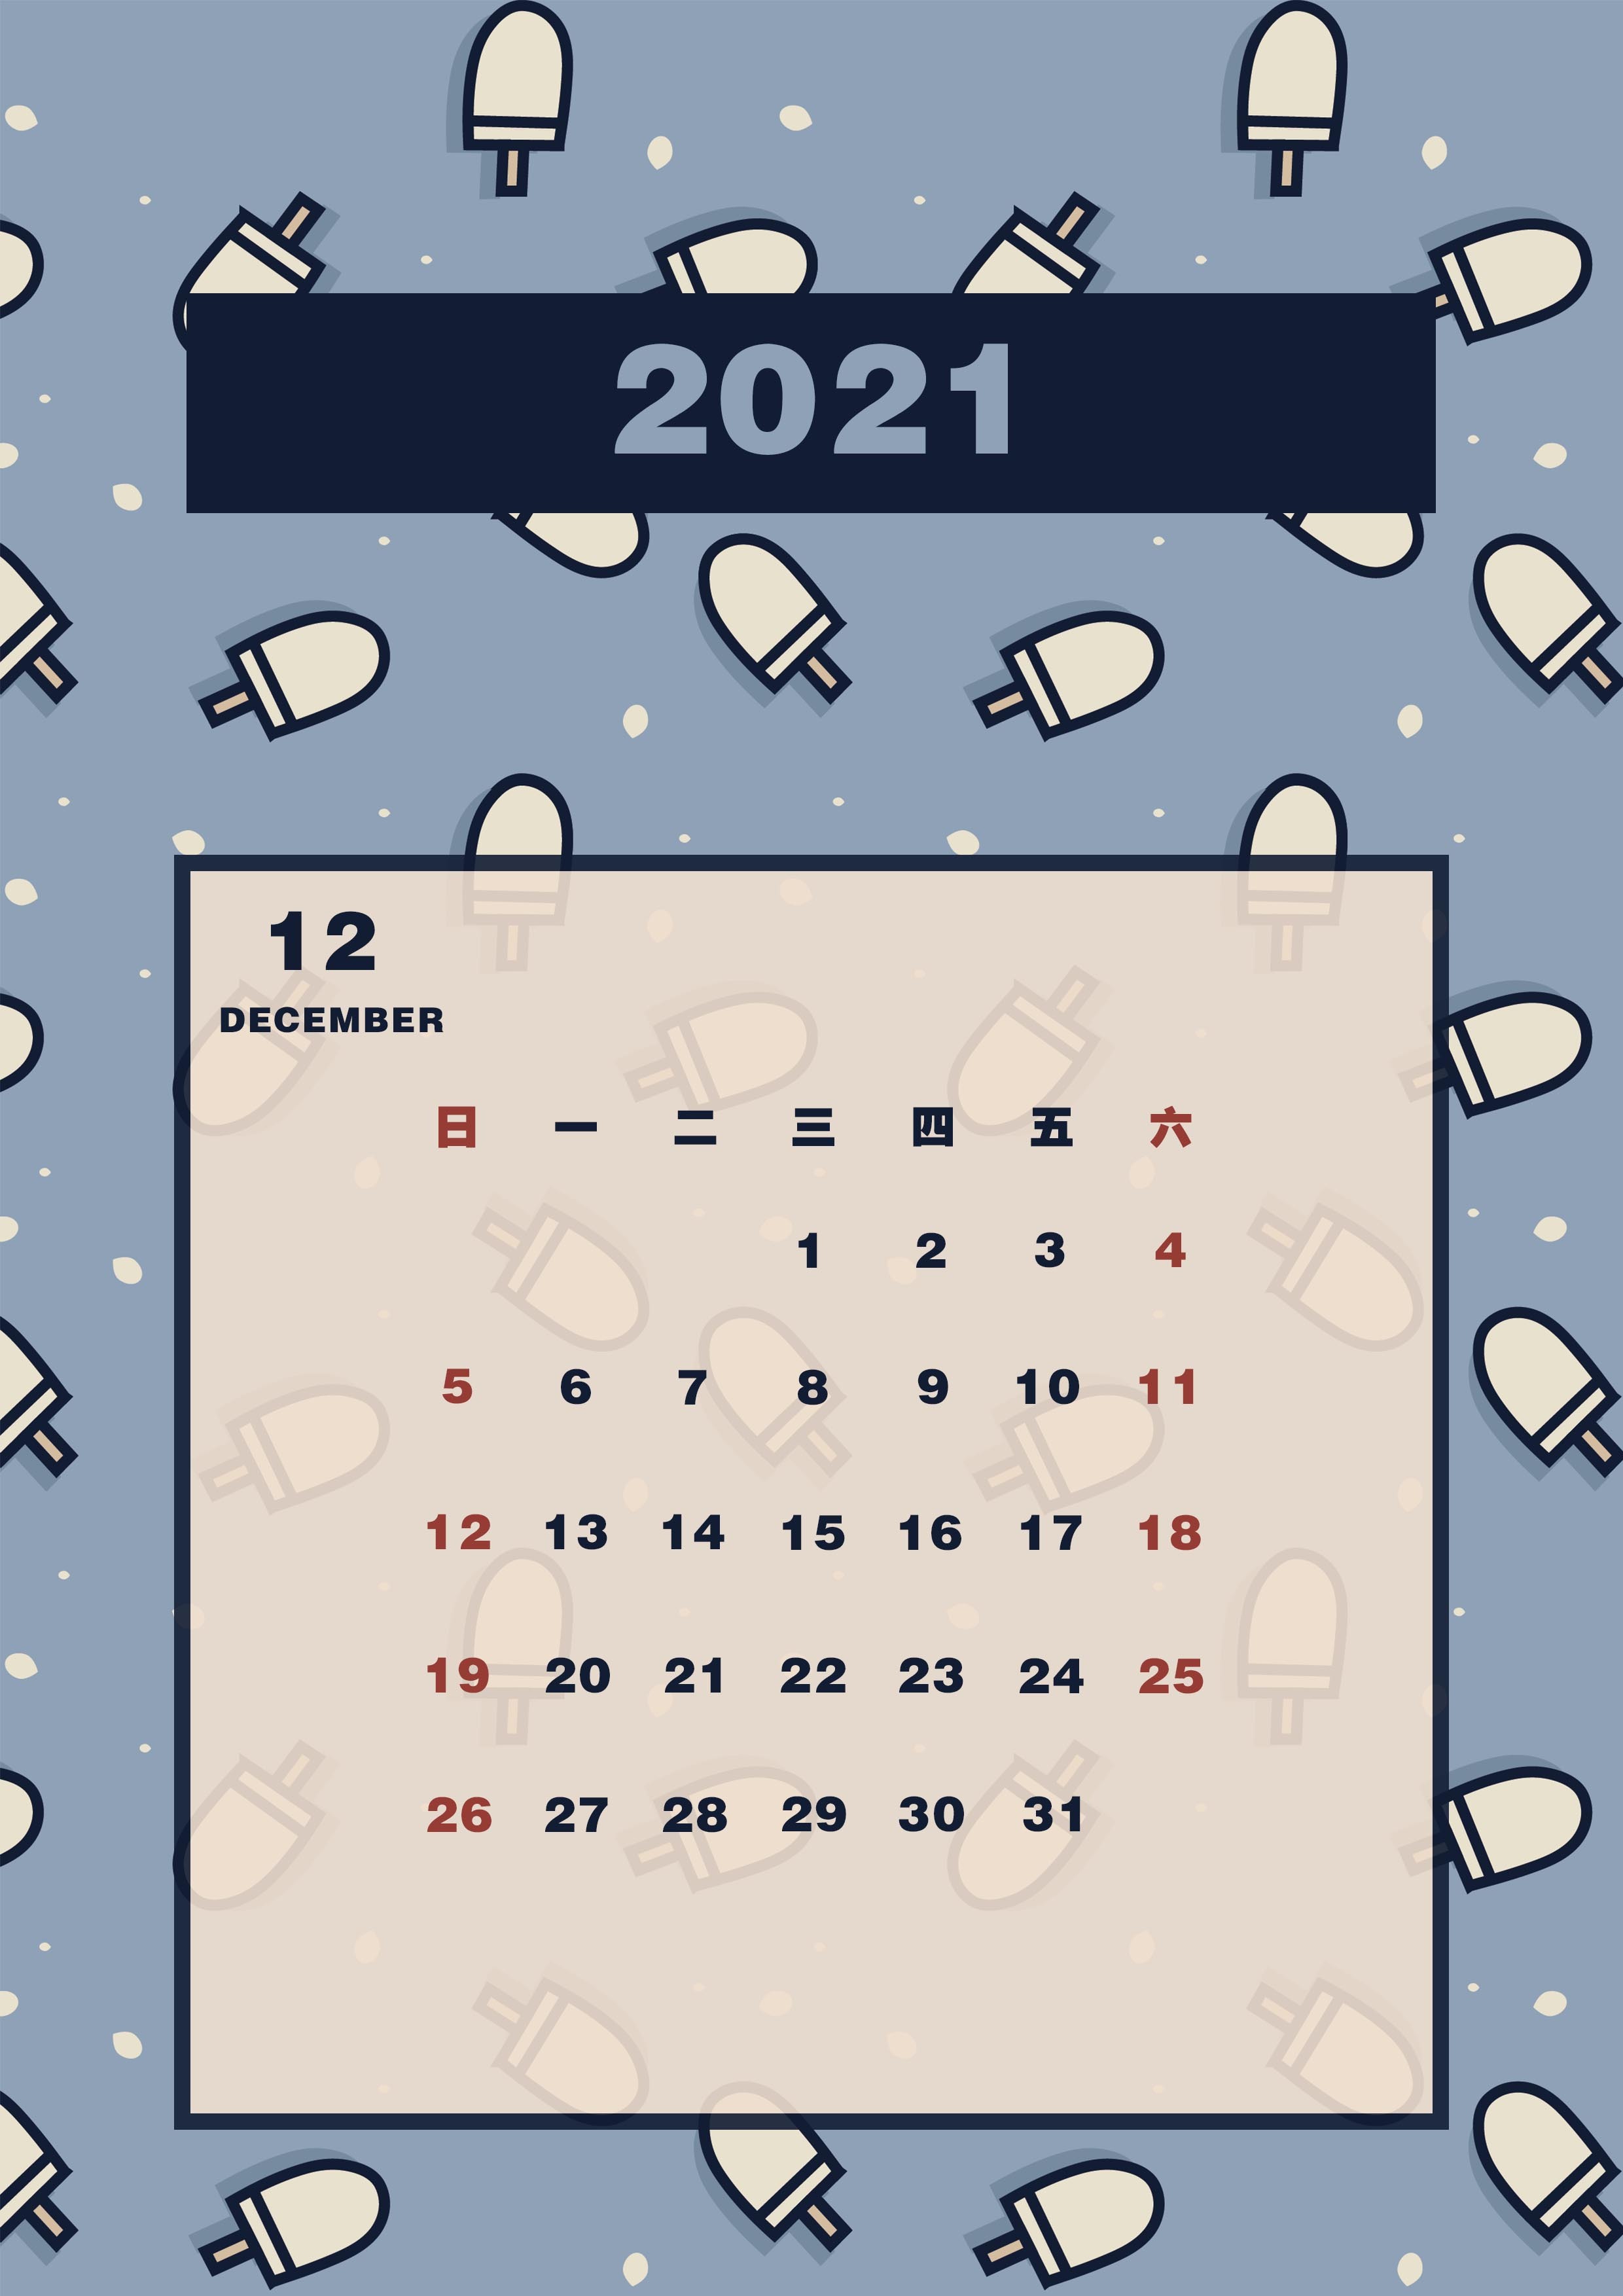 2021年1月日历打印版图片